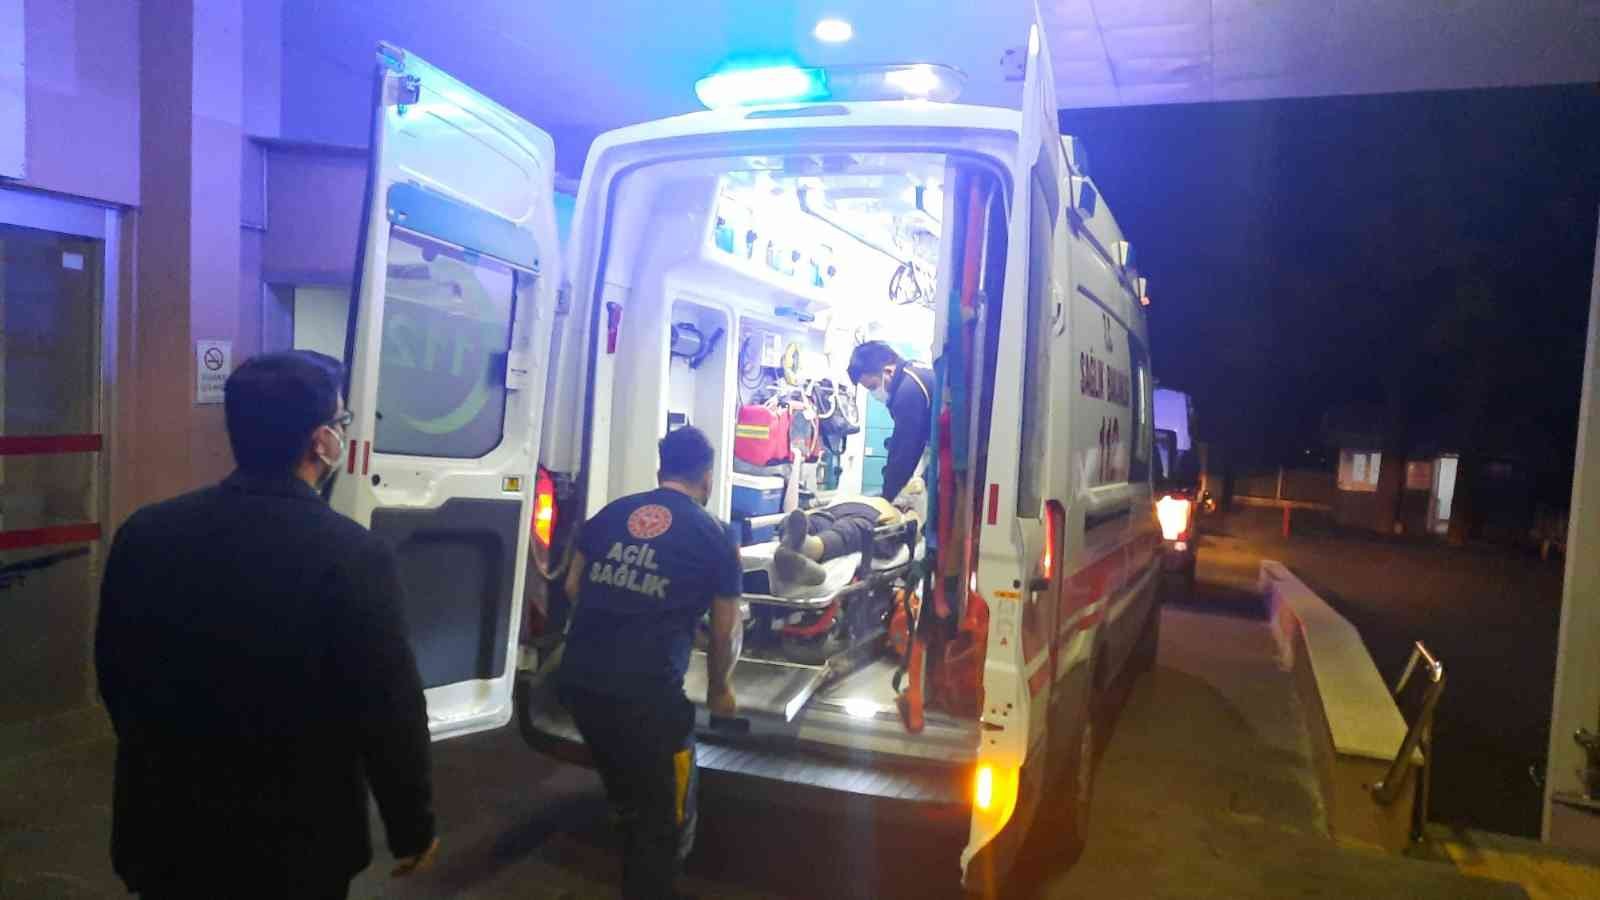 Adana’da zincirleme trafik kazası: 1 ölü, 4 yaralı